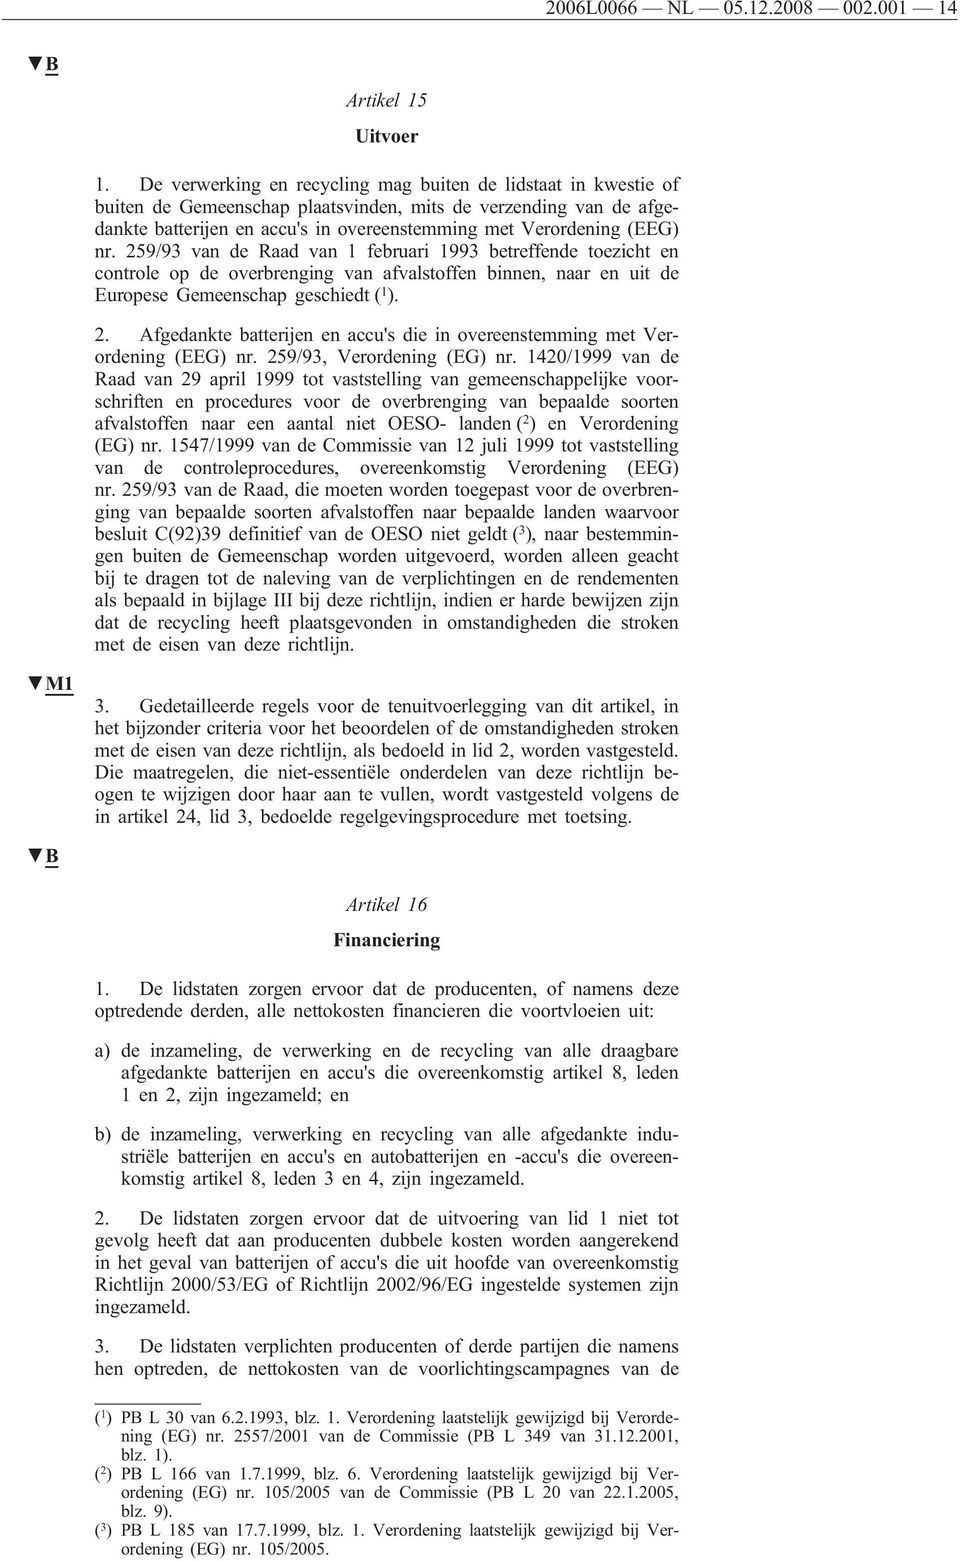 nr. 259/93 van de Raad van 1 februari 1993 betreffende toezicht en controle op de overbrenging van afvalstoffen binnen, naar en uit de Europese Gemeenschap geschiedt ( 1 ). 2. Afgedankte batterijen en accu's die in overeenstemming met Verordening (EEG) nr.